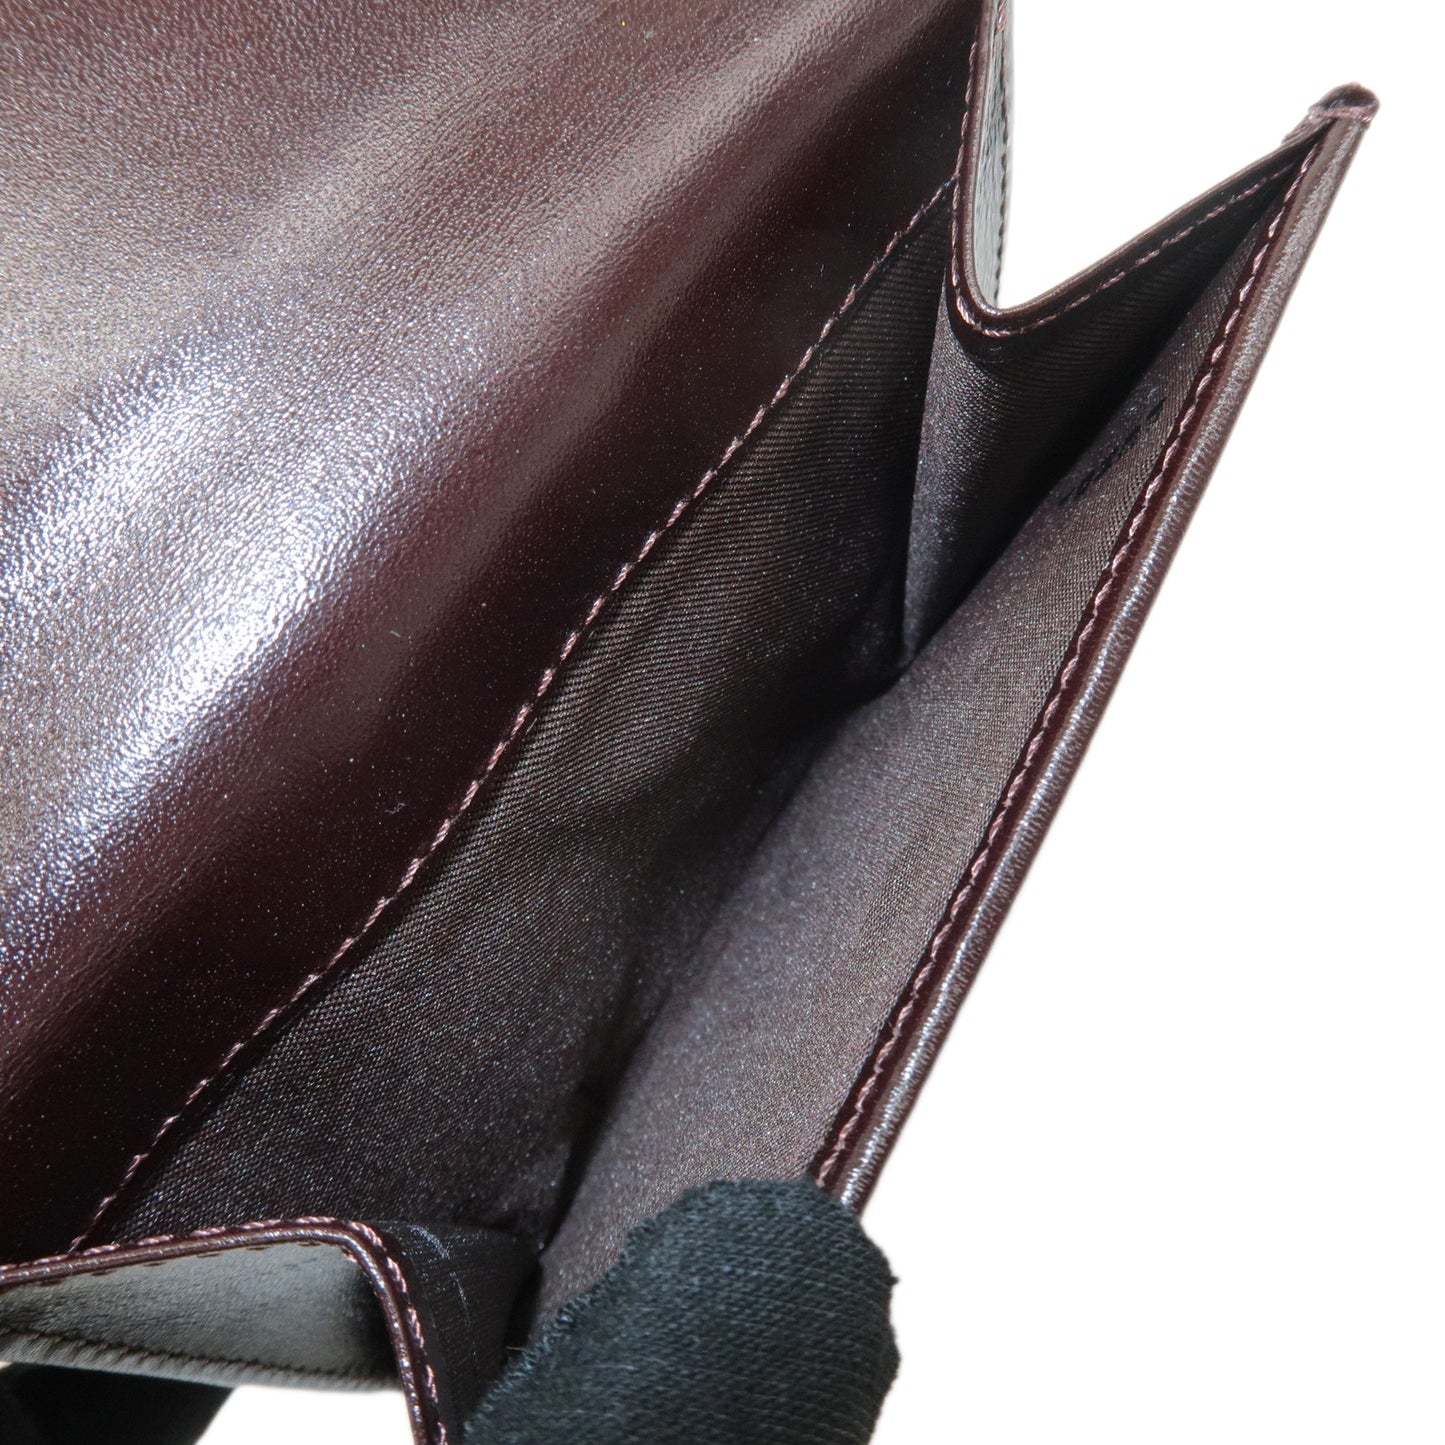 FENDI Zucca Canvas Leather Bi-fold Wallet Khaki Black Brown 01695